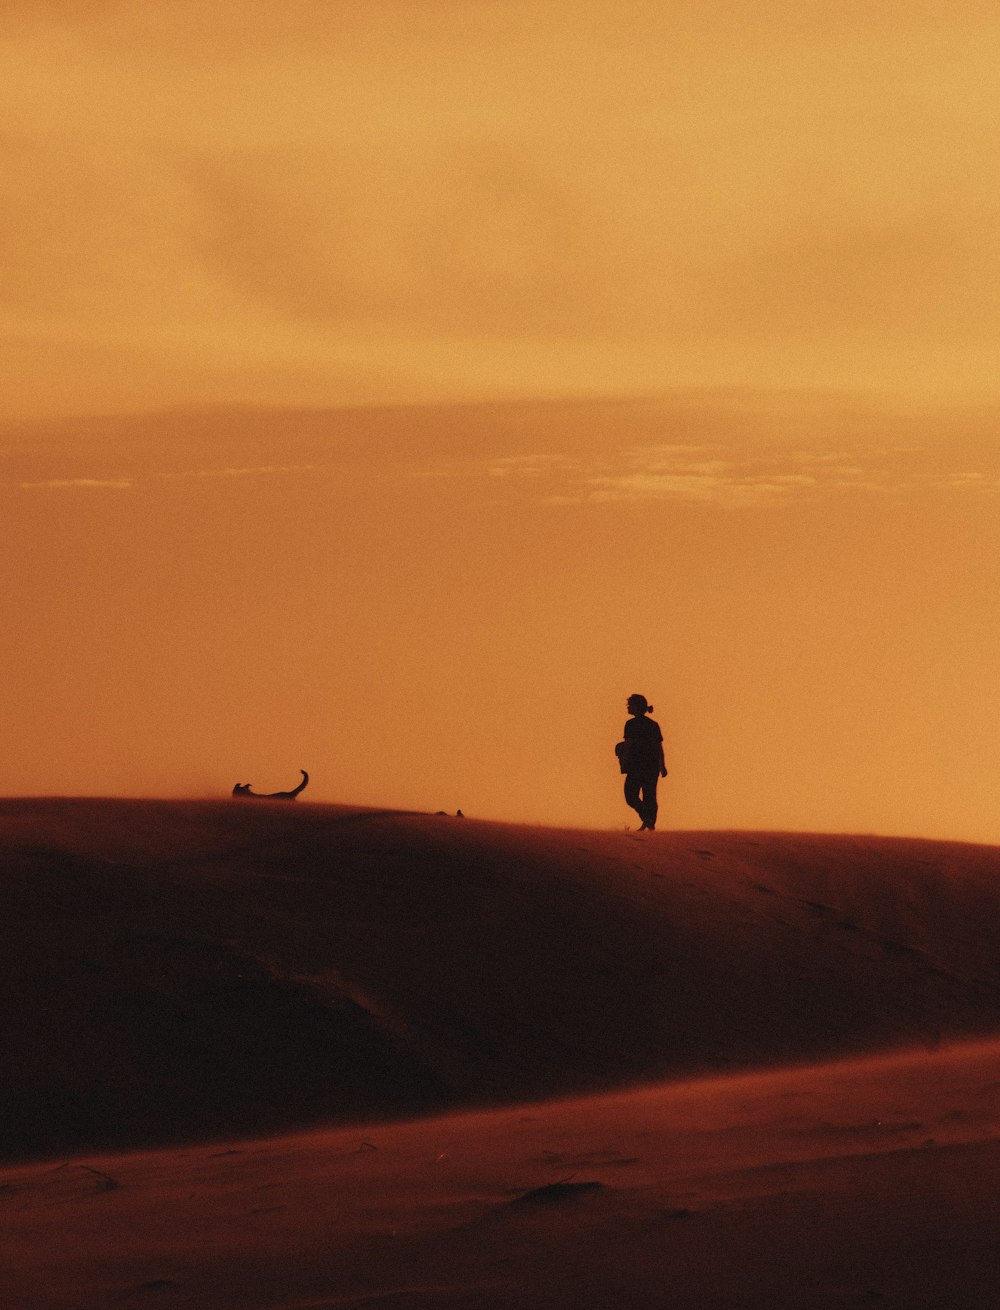 a person walking across a desert at sunset